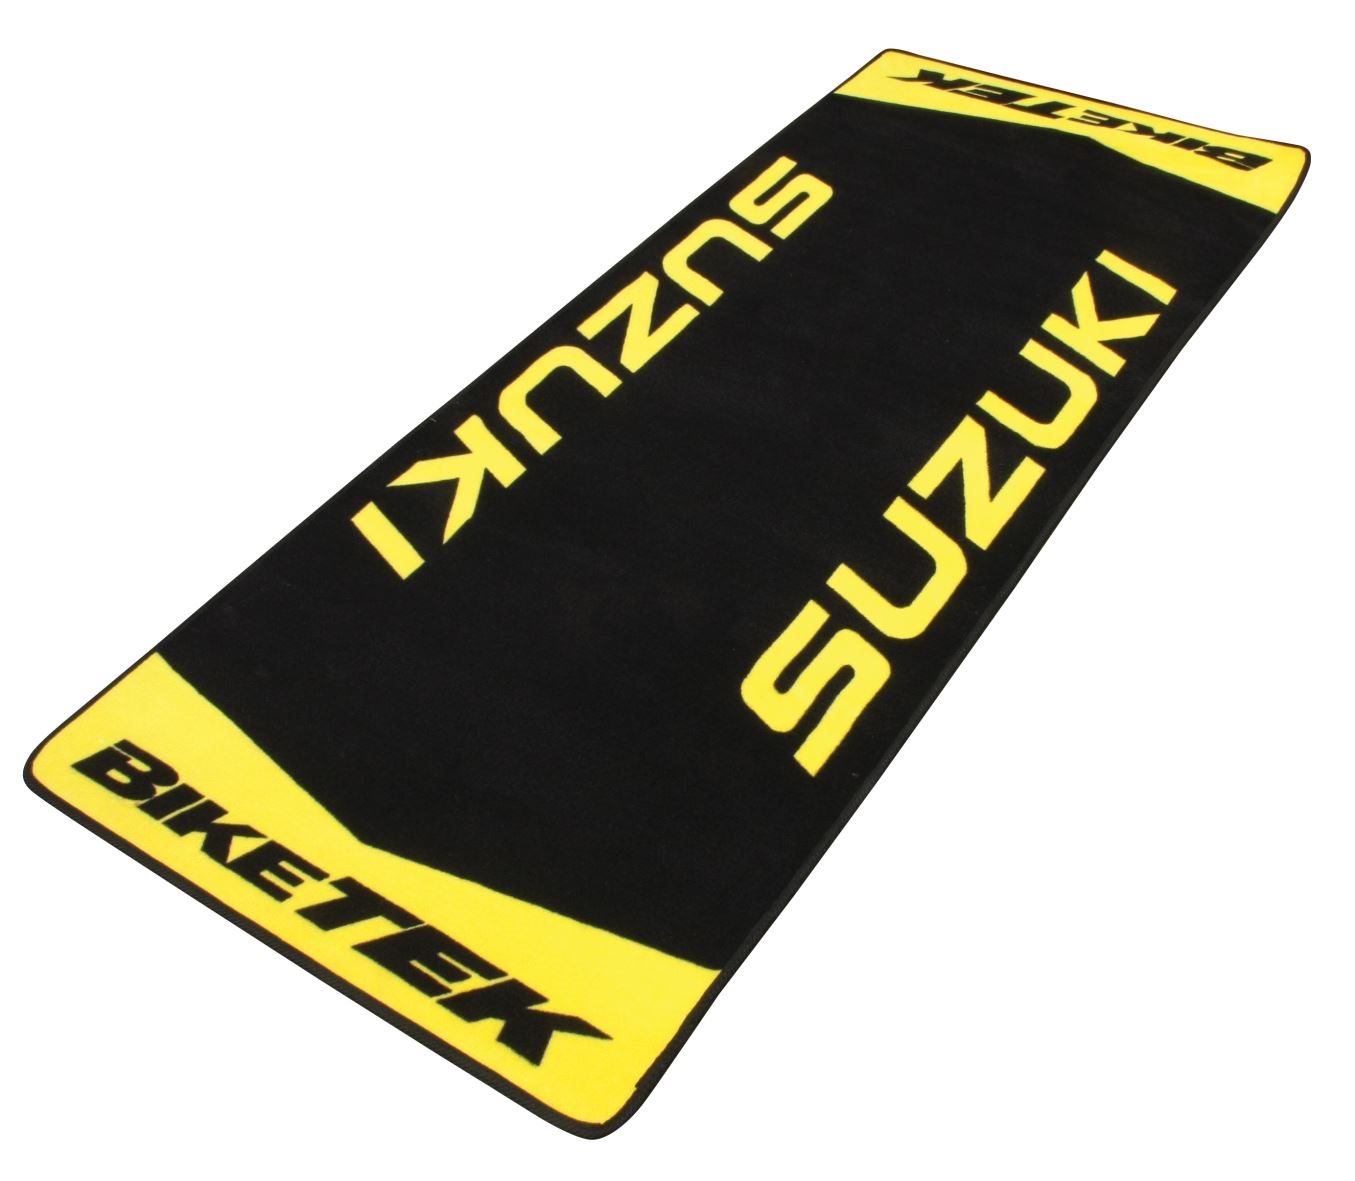 BIKE IT Teppich SUZUKI schwarz/gelb 183cm x 75cm um 89,90 EUR - 1000PS Shop  - Fahrwerk